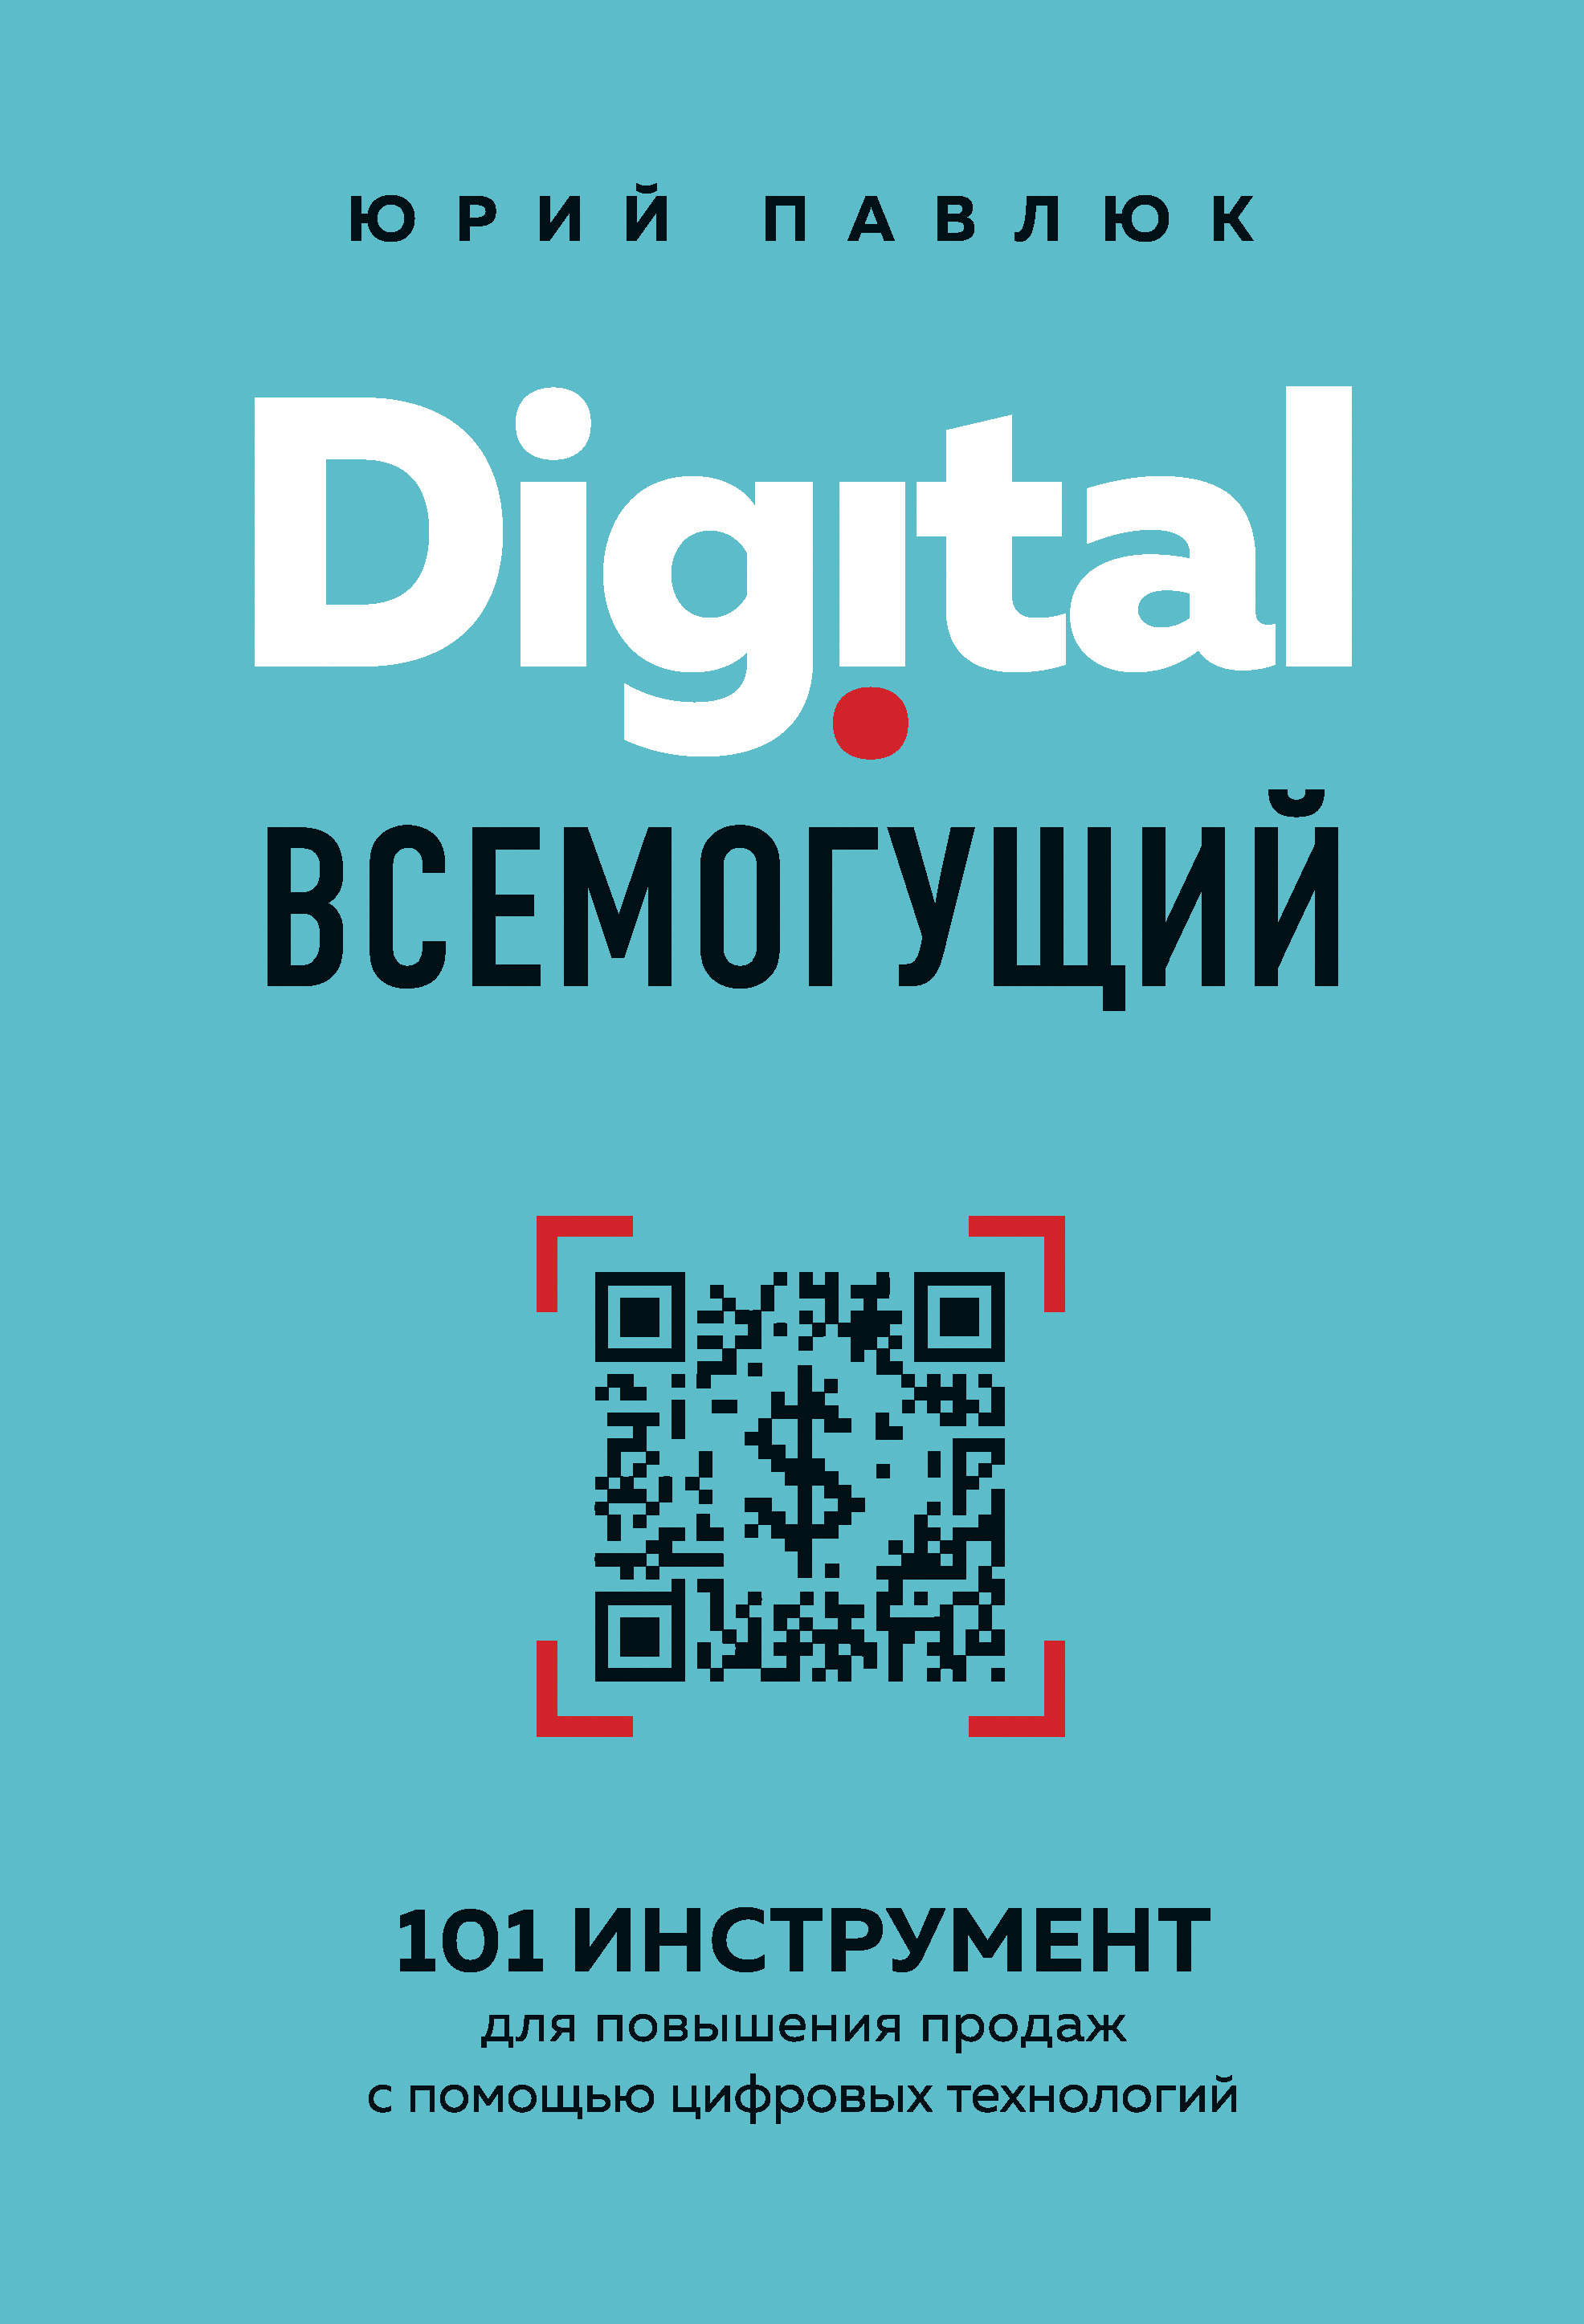 Digital всемогущий. 101 инструмент для повышения продаж с помощью цифровых технологий читать онлайн